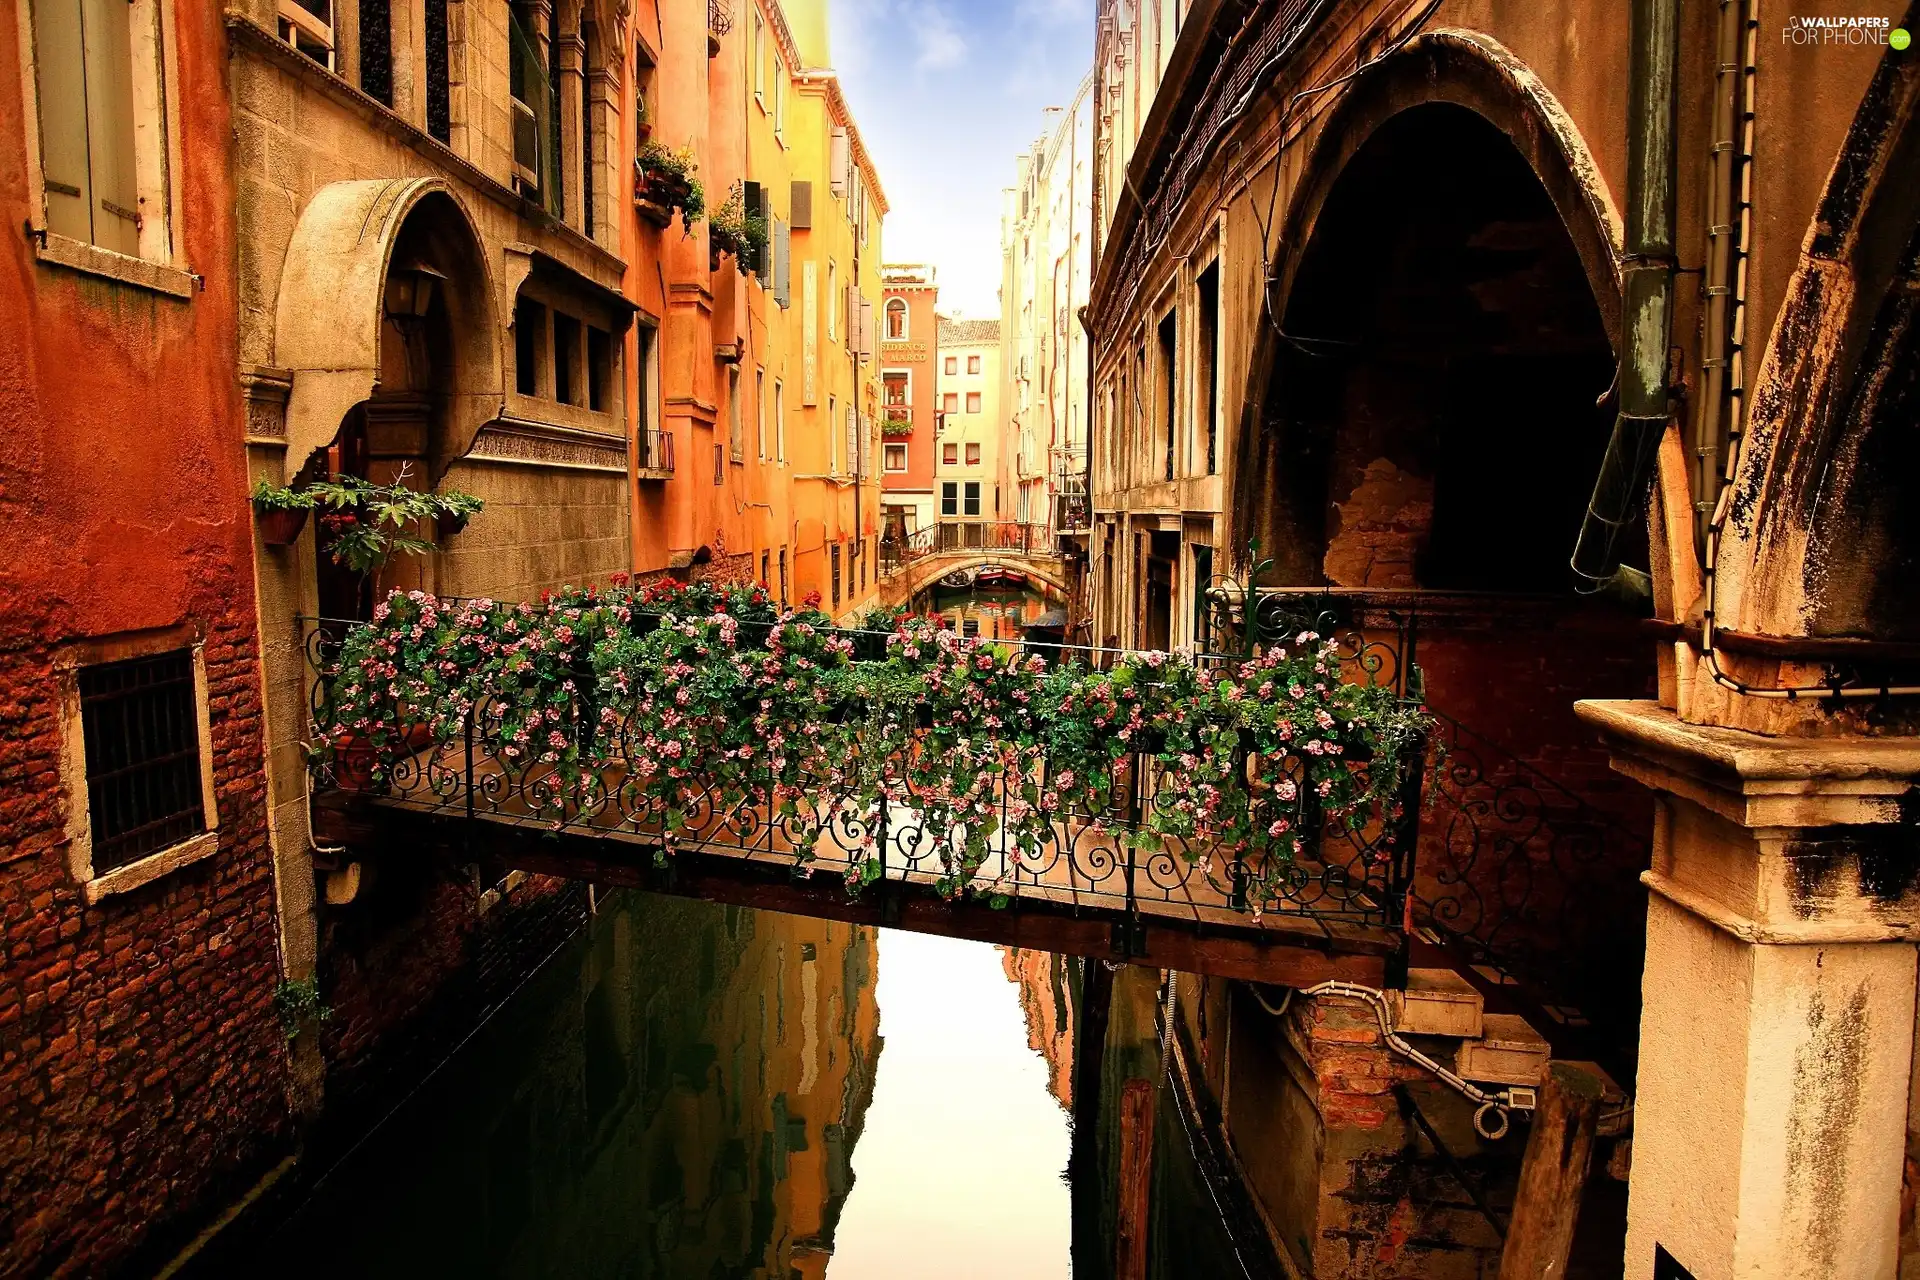 bridges, canal, Houses, Flowers